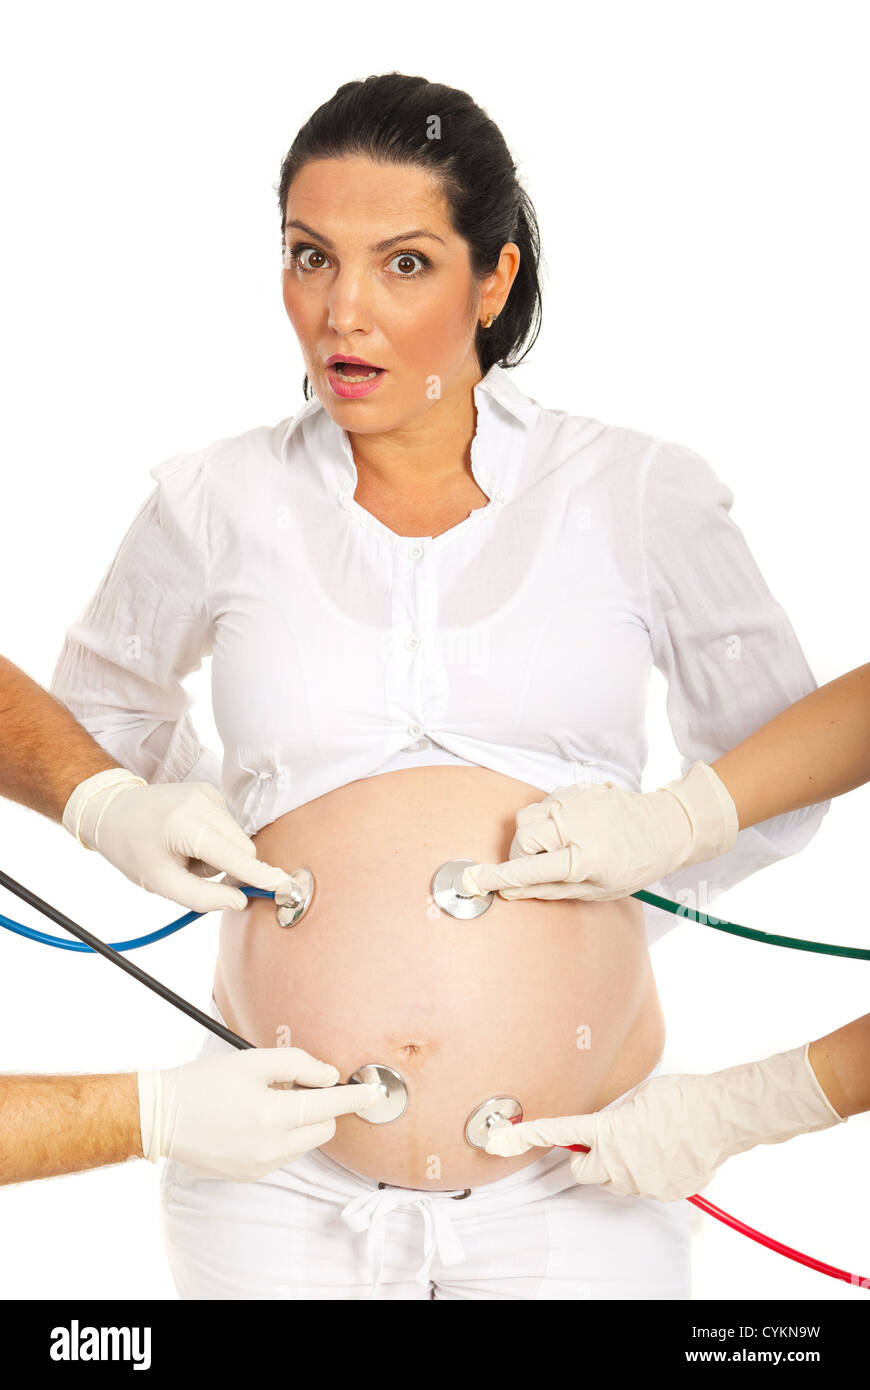 Erstaunt schwangere Frau mit vielen Stethoskope untersuchen ihren Bauch isoliert auf weißem Hintergrund Stockfoto